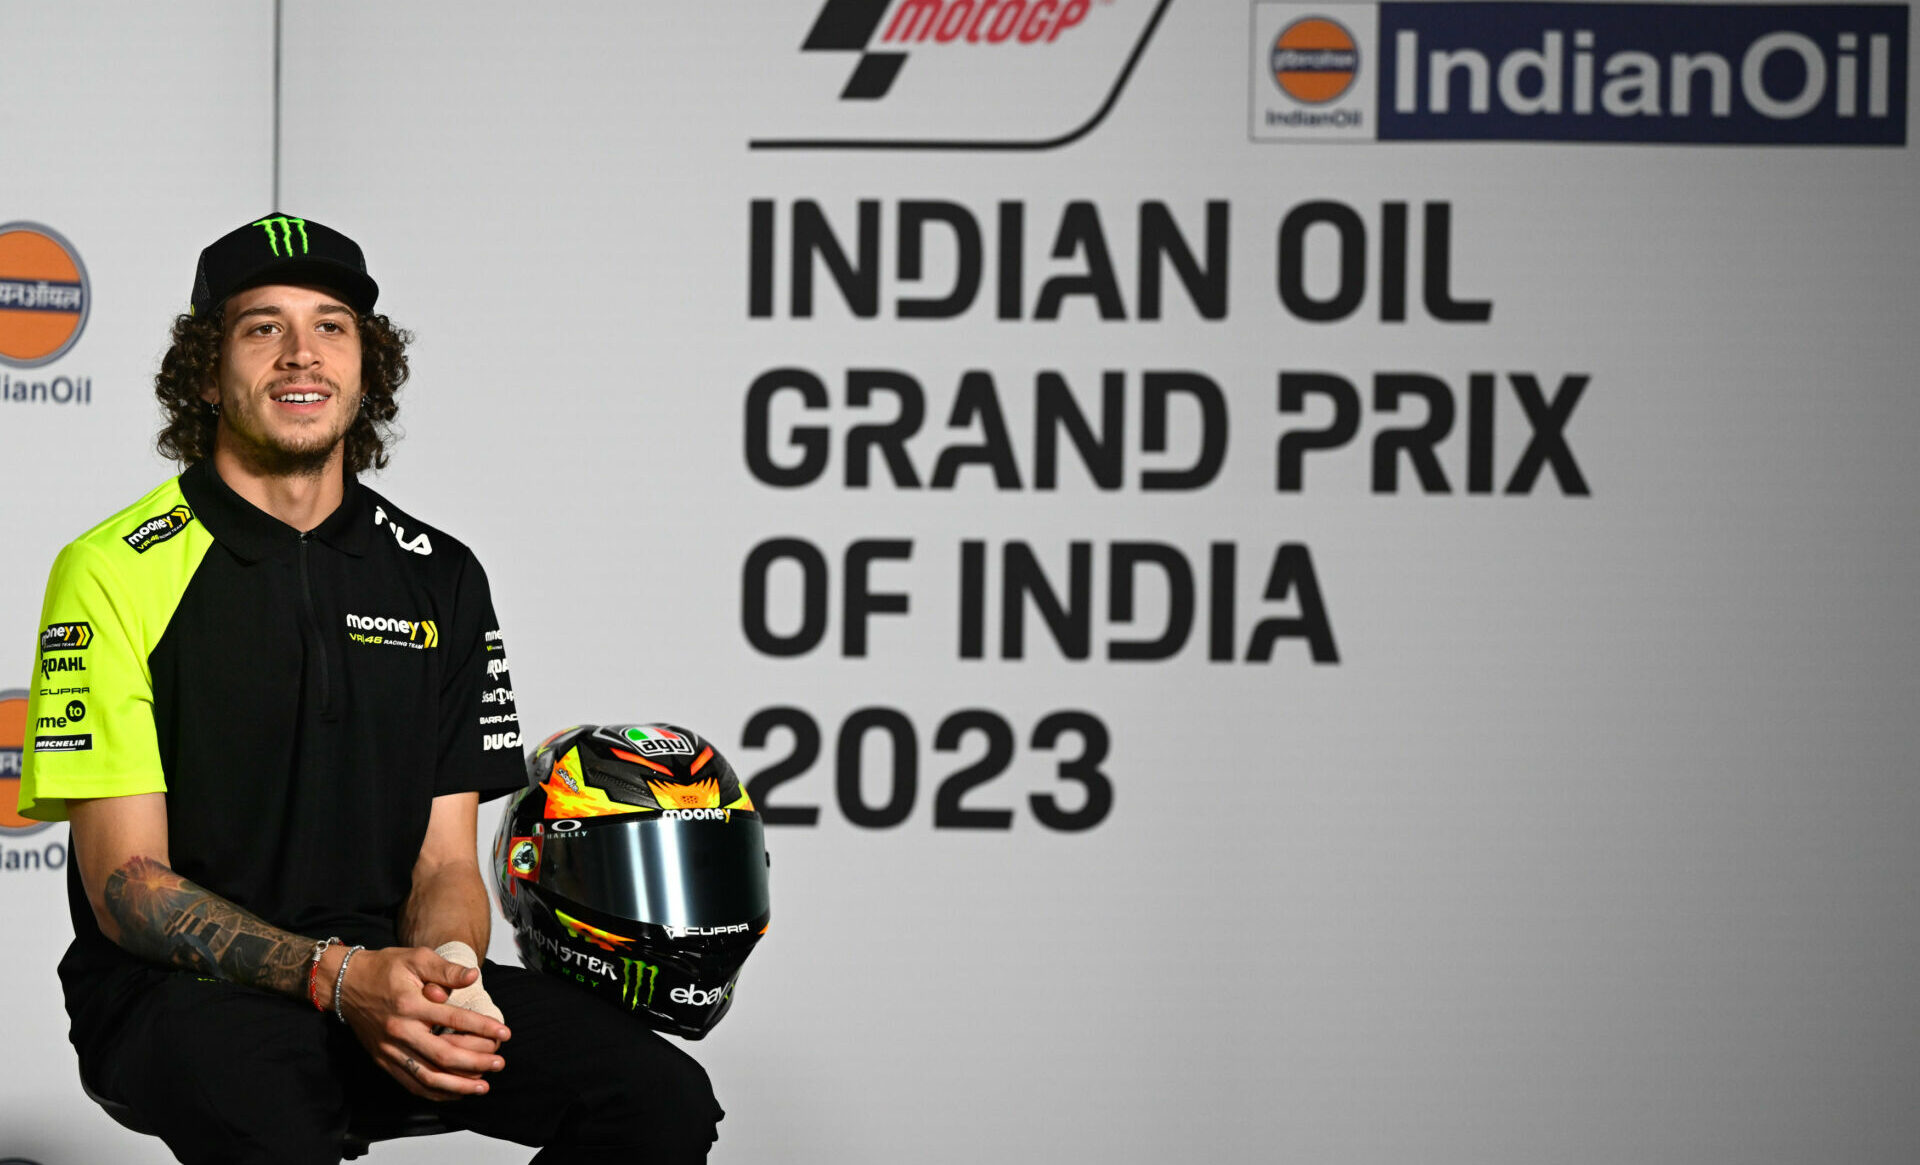 Marco Bezzecchi at the pre-race press conference in India. Photo courtesy Dorna.